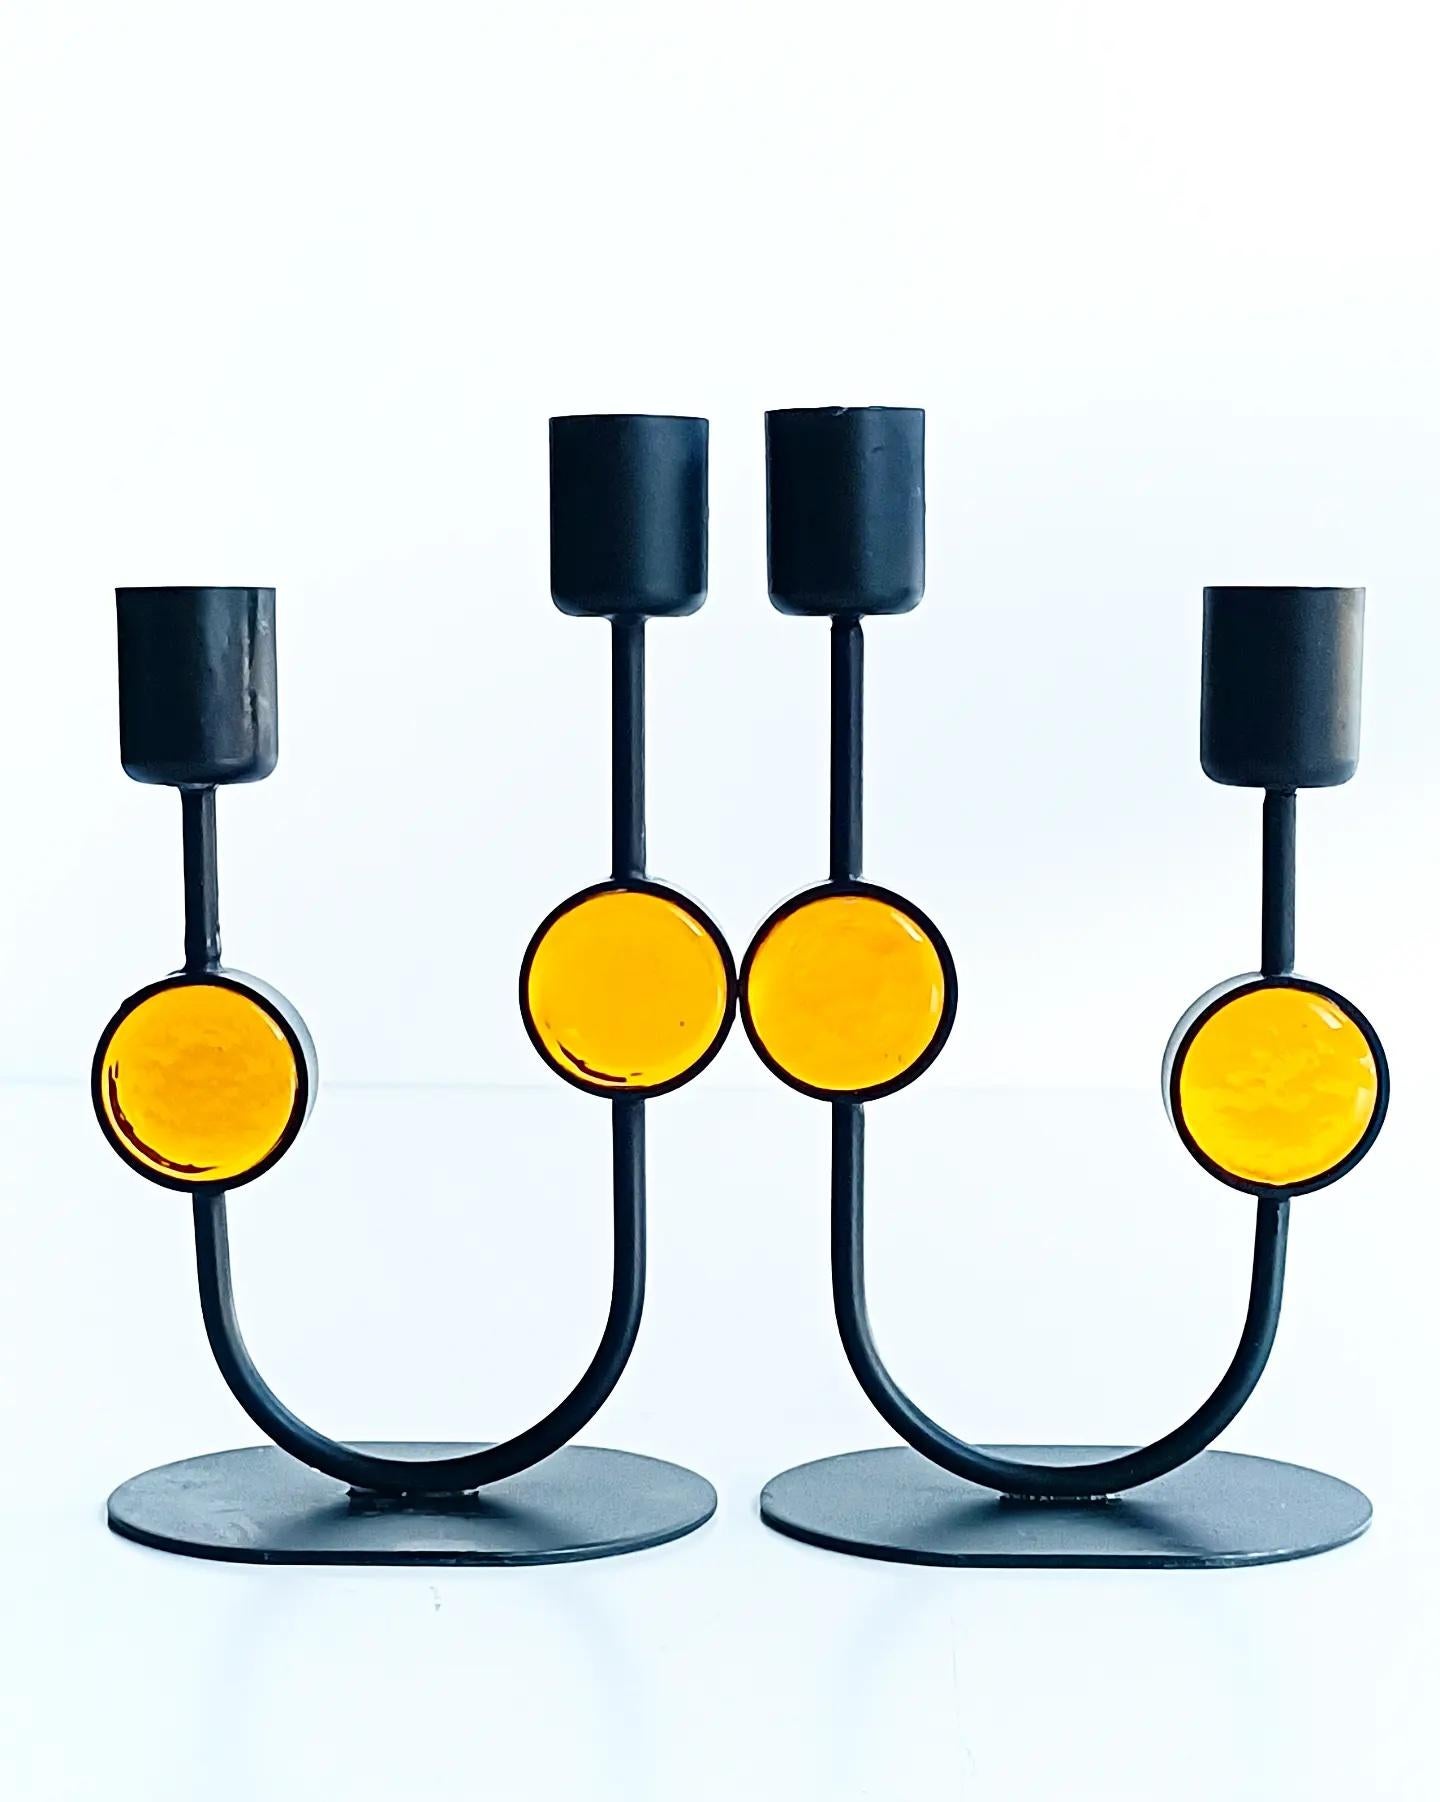 Ein besonders cooles Paar Kerzenhalter, entworfen von Gunnar Ander für Ystad-Metall. Diese in den 1950er Jahren in Schweden handgefertigten Kerzenständer sind ein Zeugnis für Ander's unvergleichliche Kreativität und Handwerkskunst.

Aus robustem